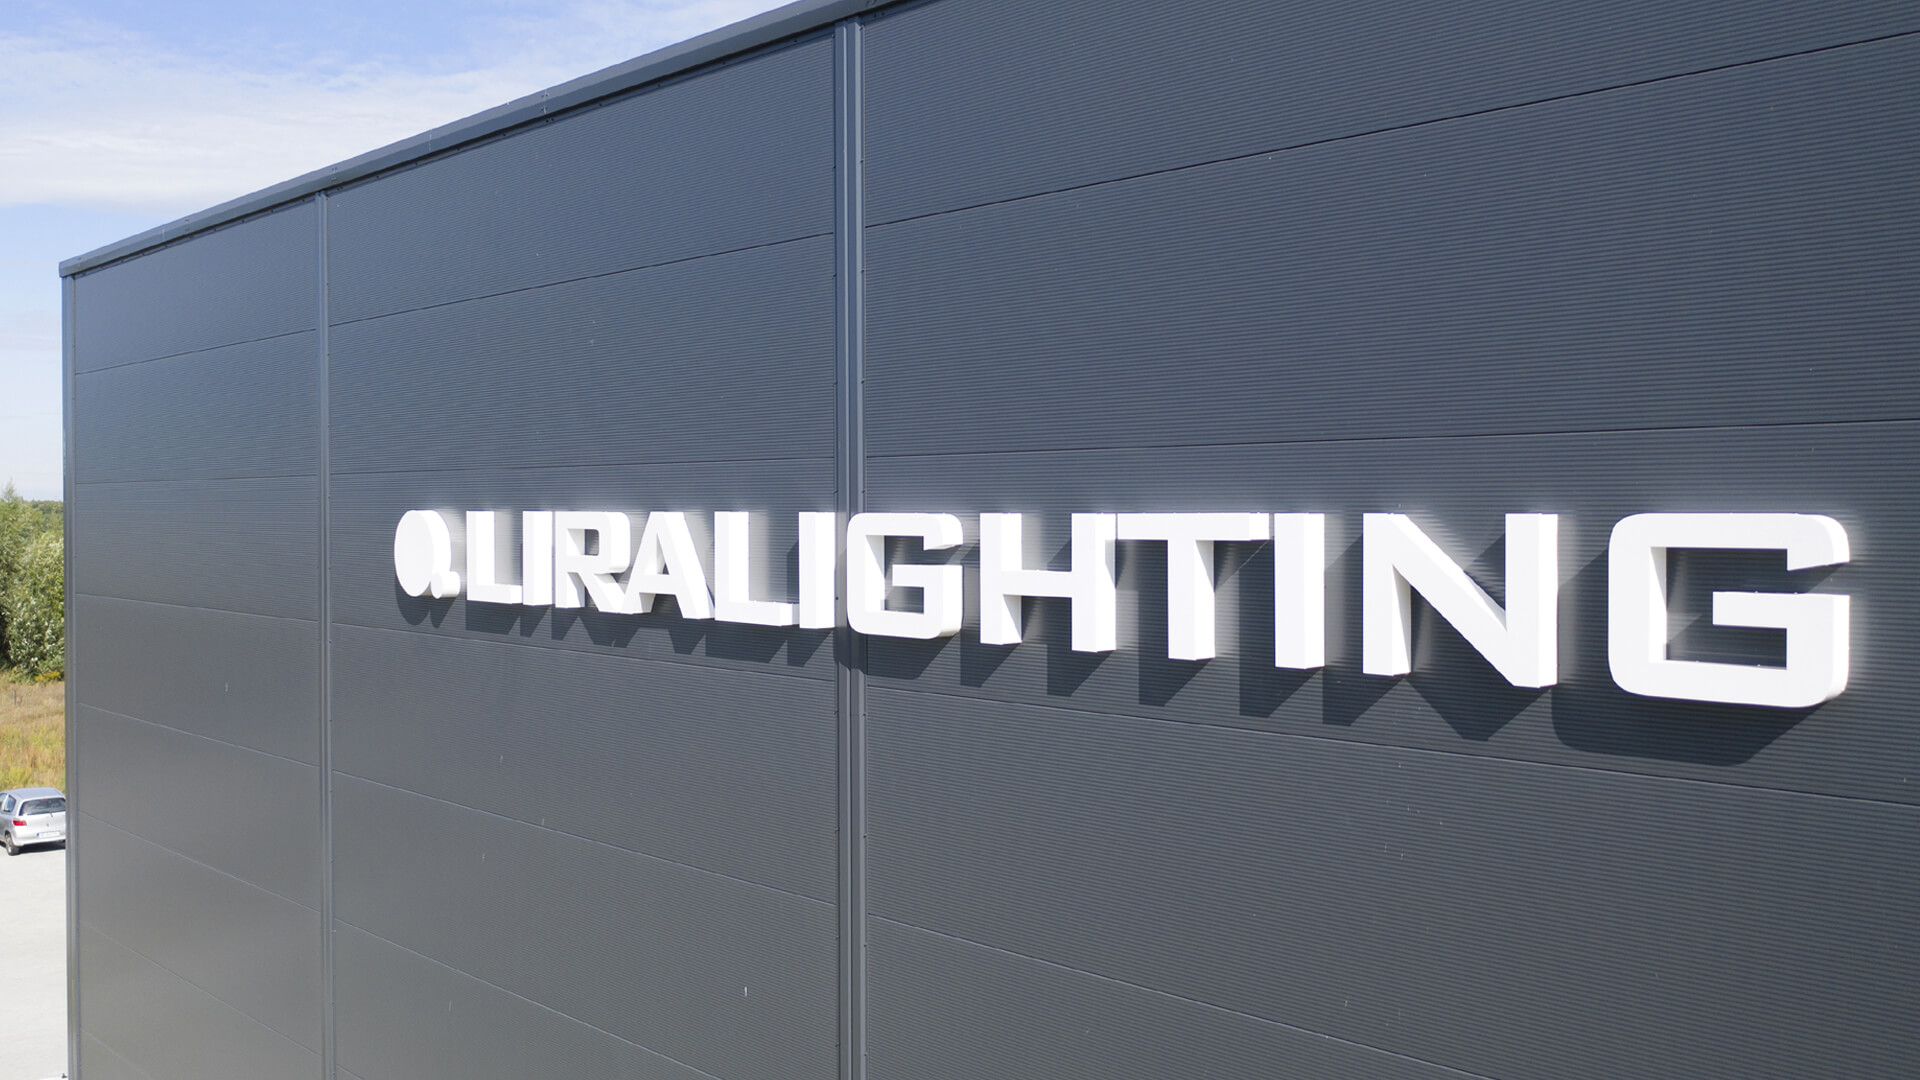 Letras luminosas Liralighting - Letras LED 3D para nave industrial en blanco.